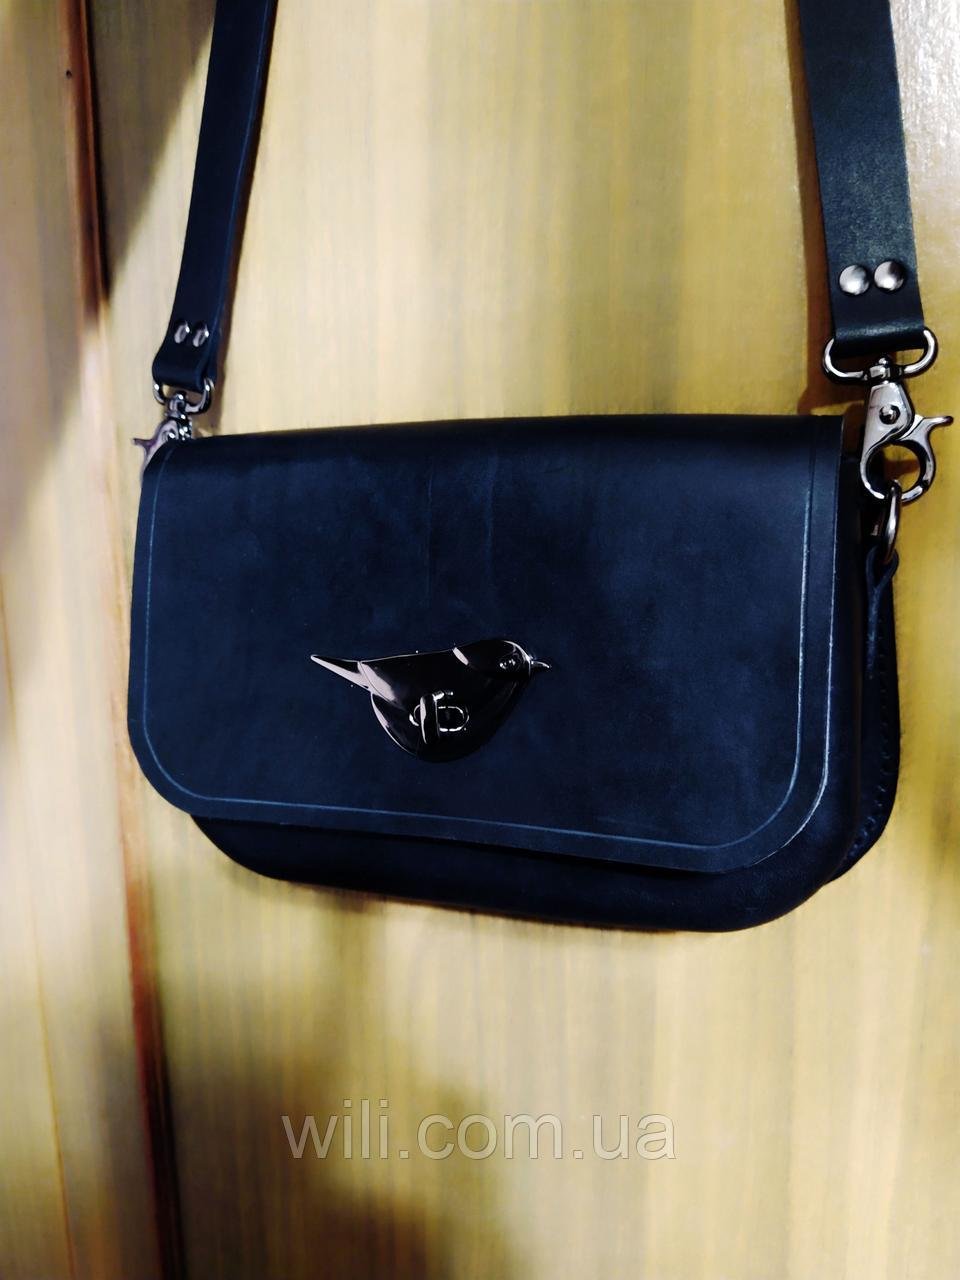 Женская кожаная сумочка ручной работы "Итальянка"